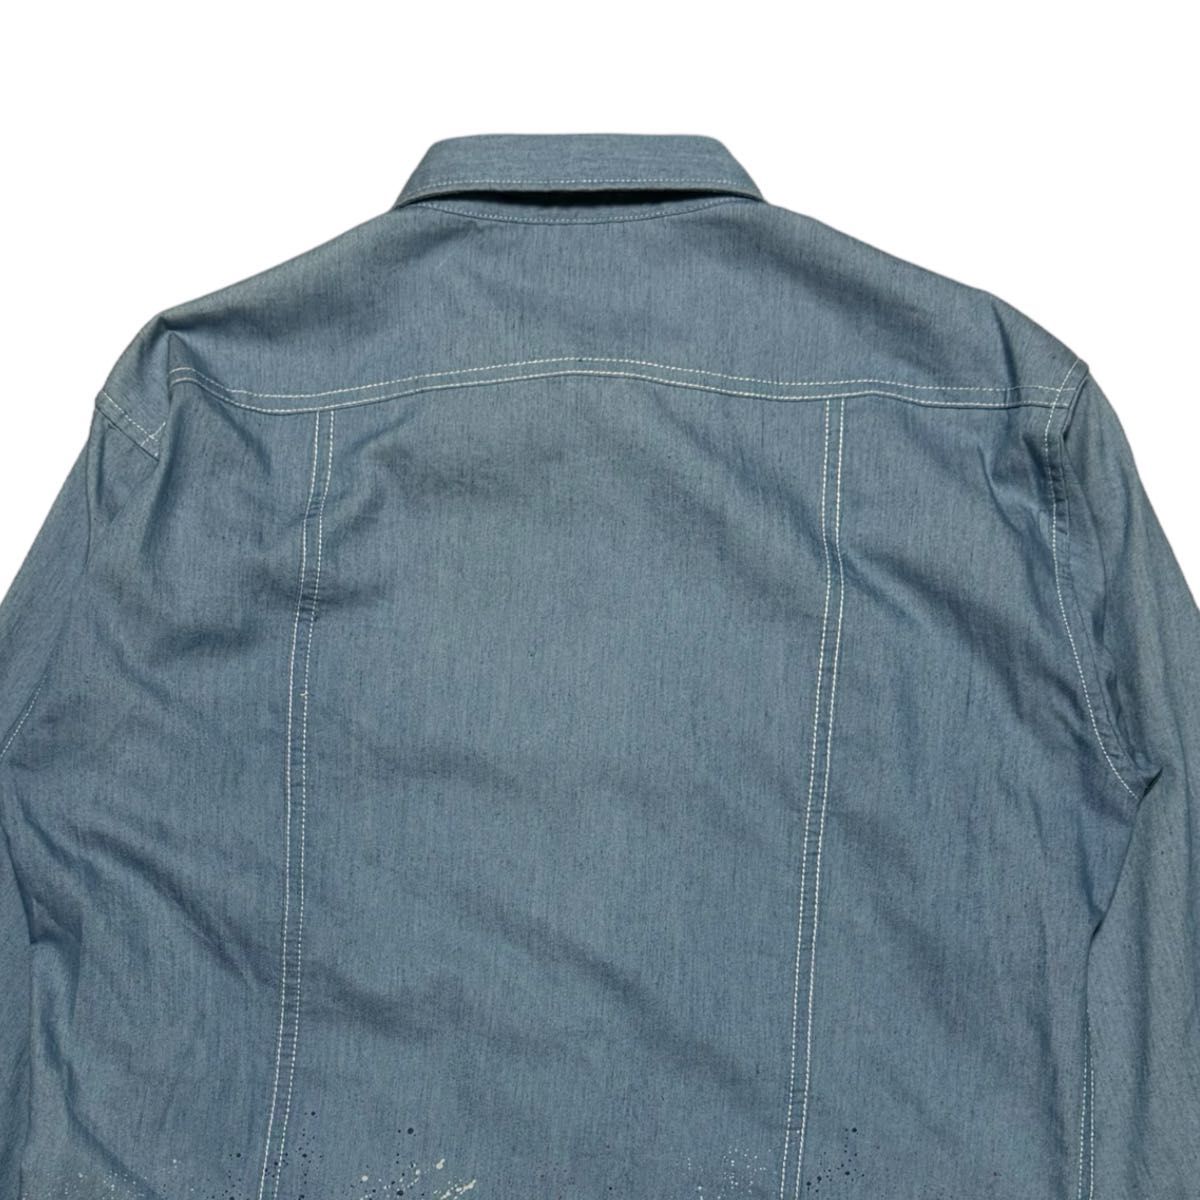 【定価1.6万】未着用品 LOVELESS ラブレス スプラッシュペイントシャツ サイズ2 M相当 ライトブルー スナップボタン